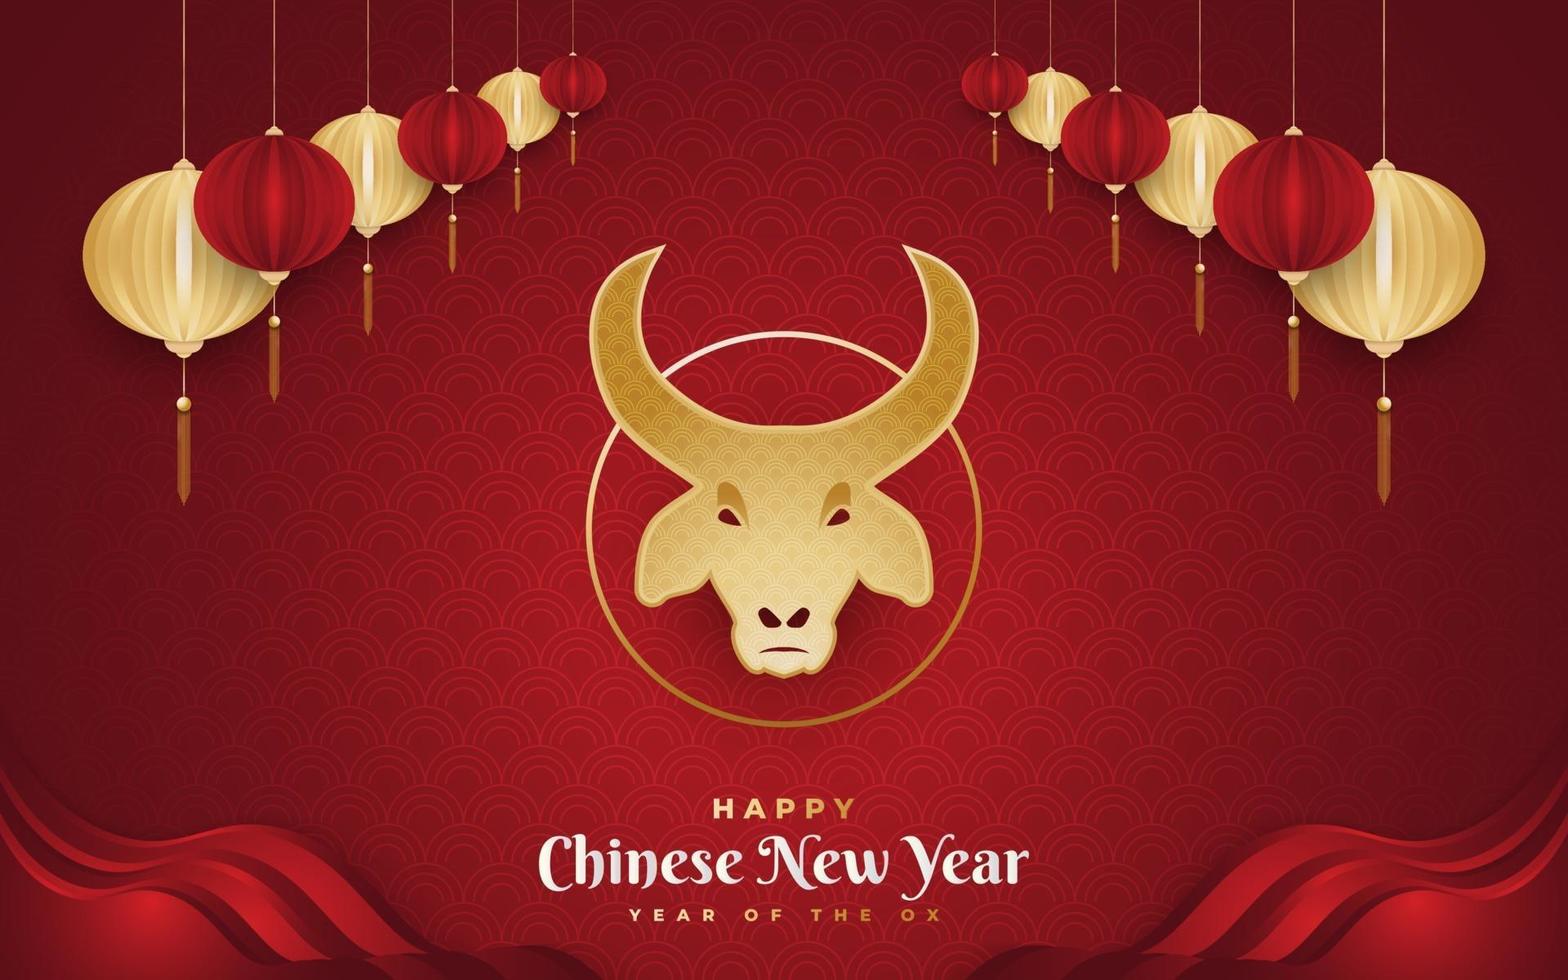 felice anno nuovo cinese 2021 anno del bue. banner di capodanno cinese decorato con testa di bue dorato e lanterne dorate su sfondo di carta rossa vettore